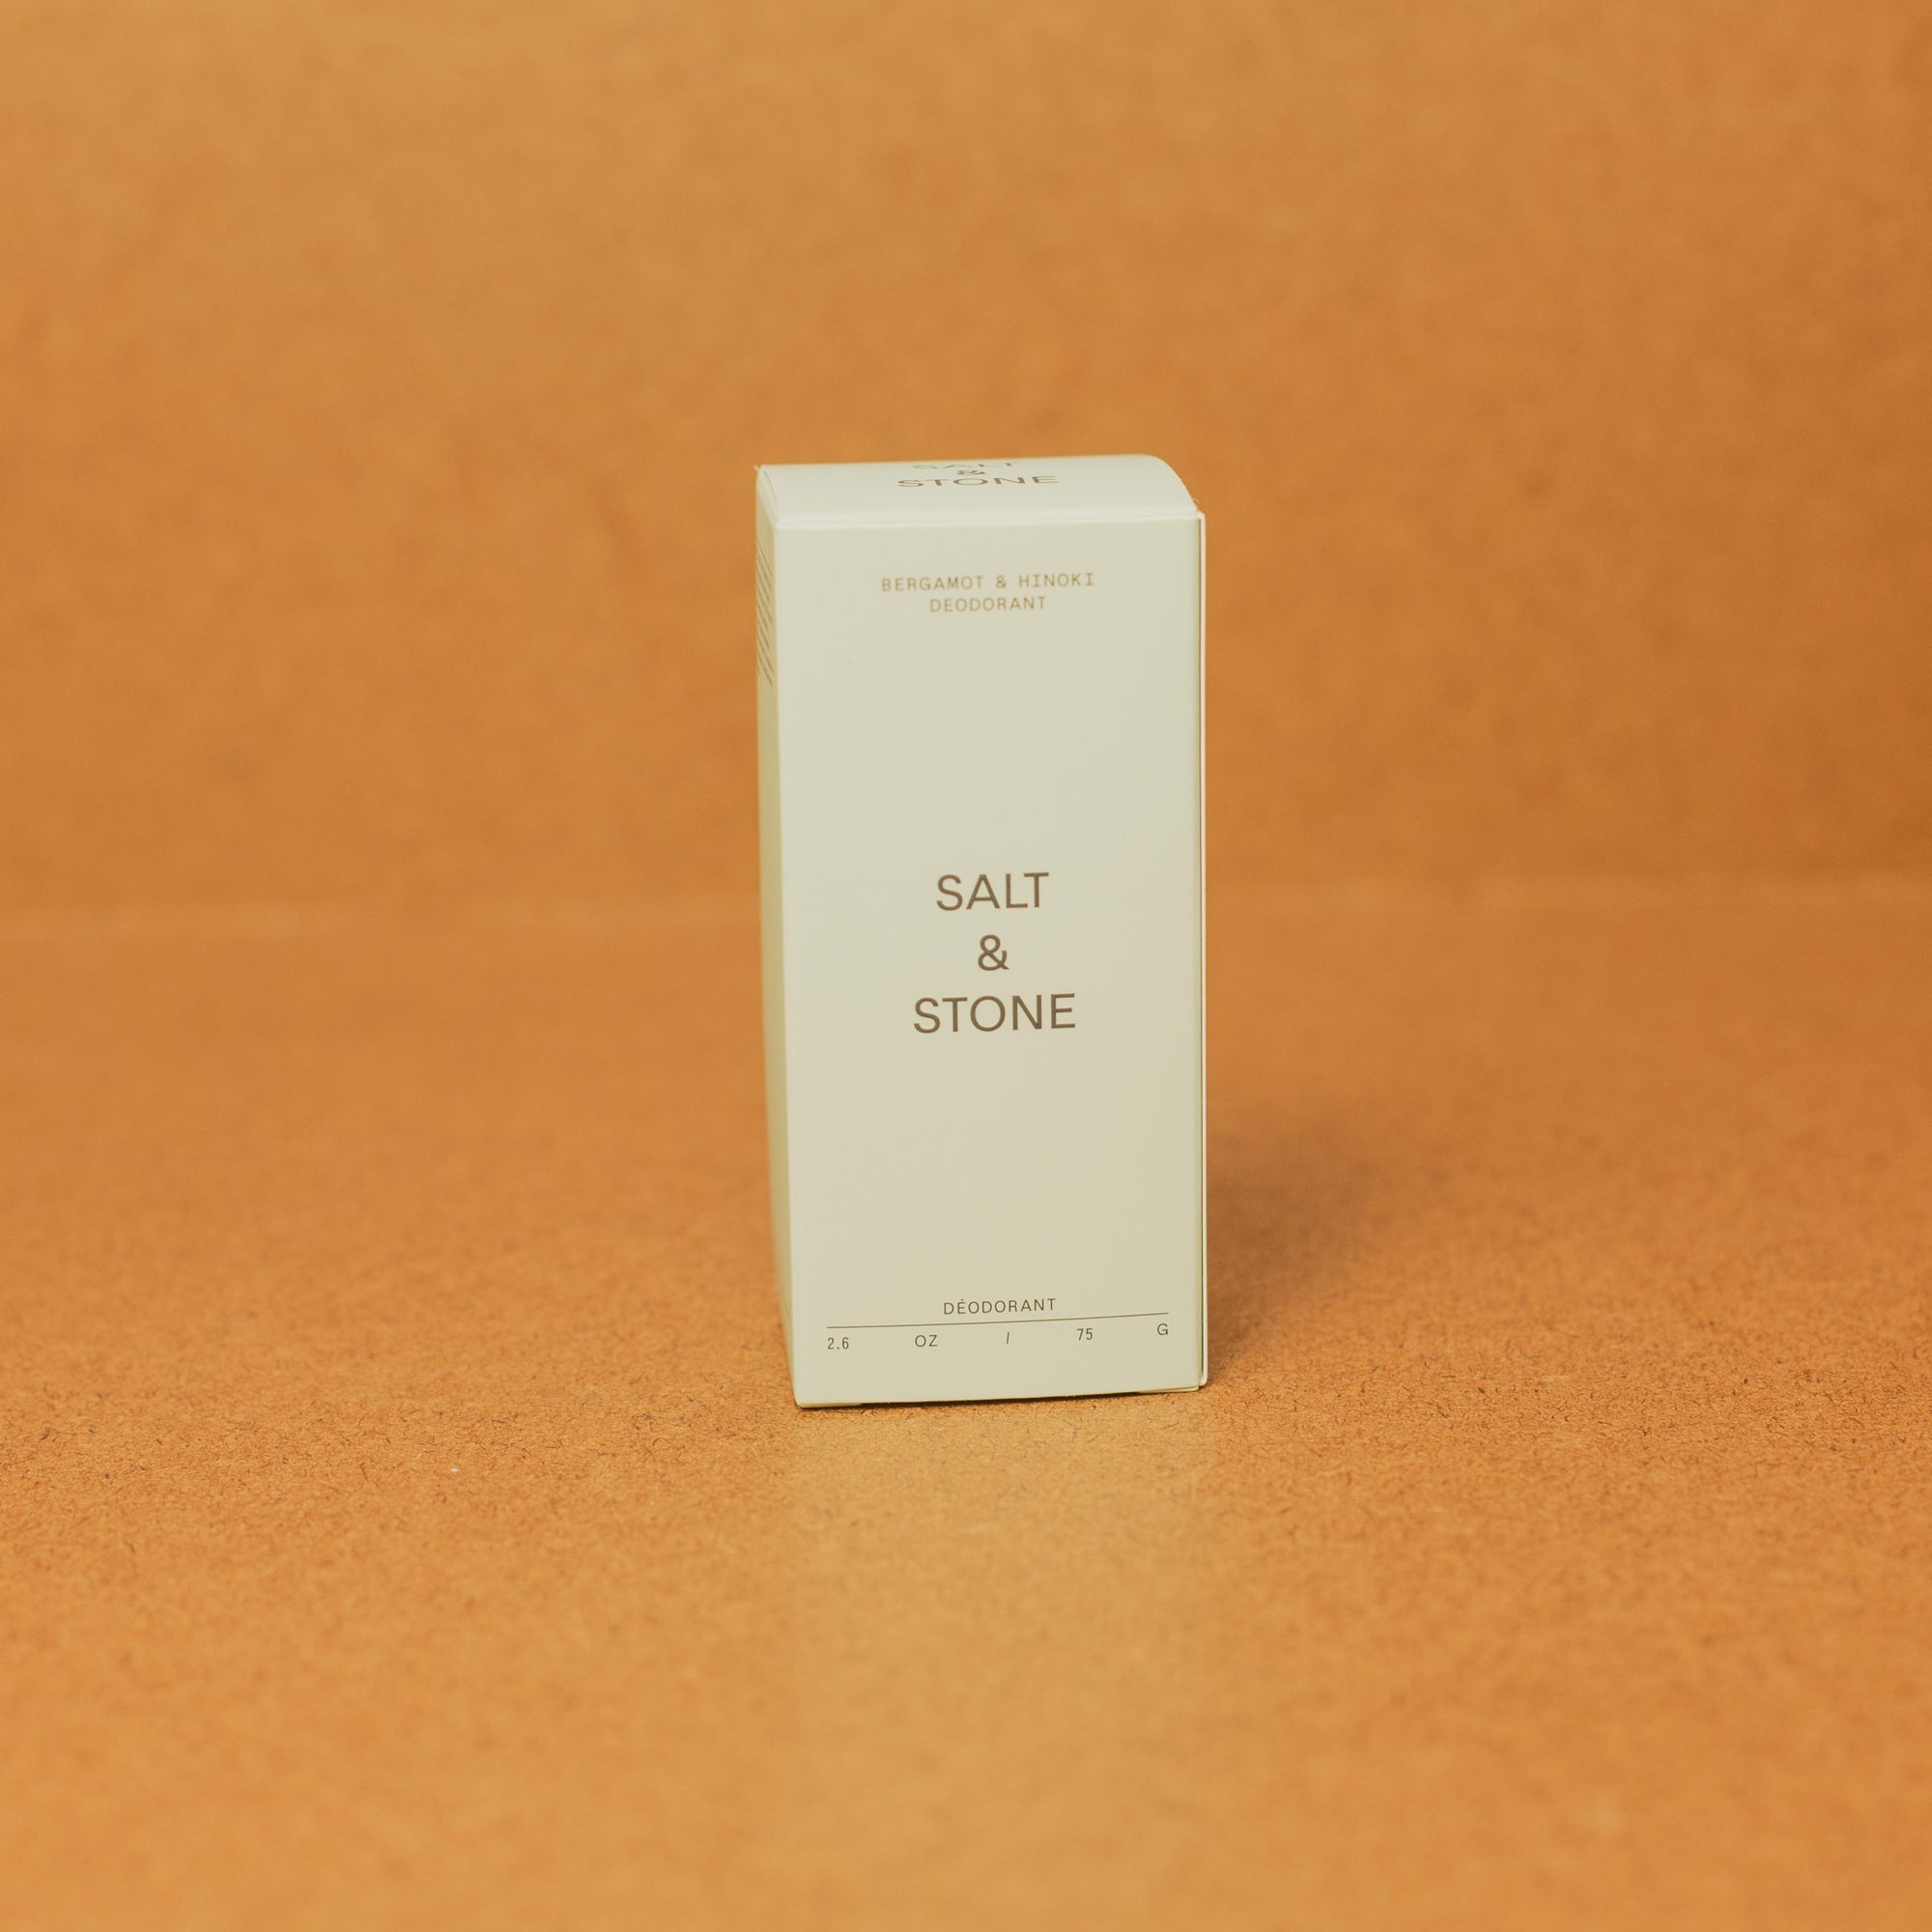 Salt and Stone Deodorant - Bergamont & Hinoki box front view